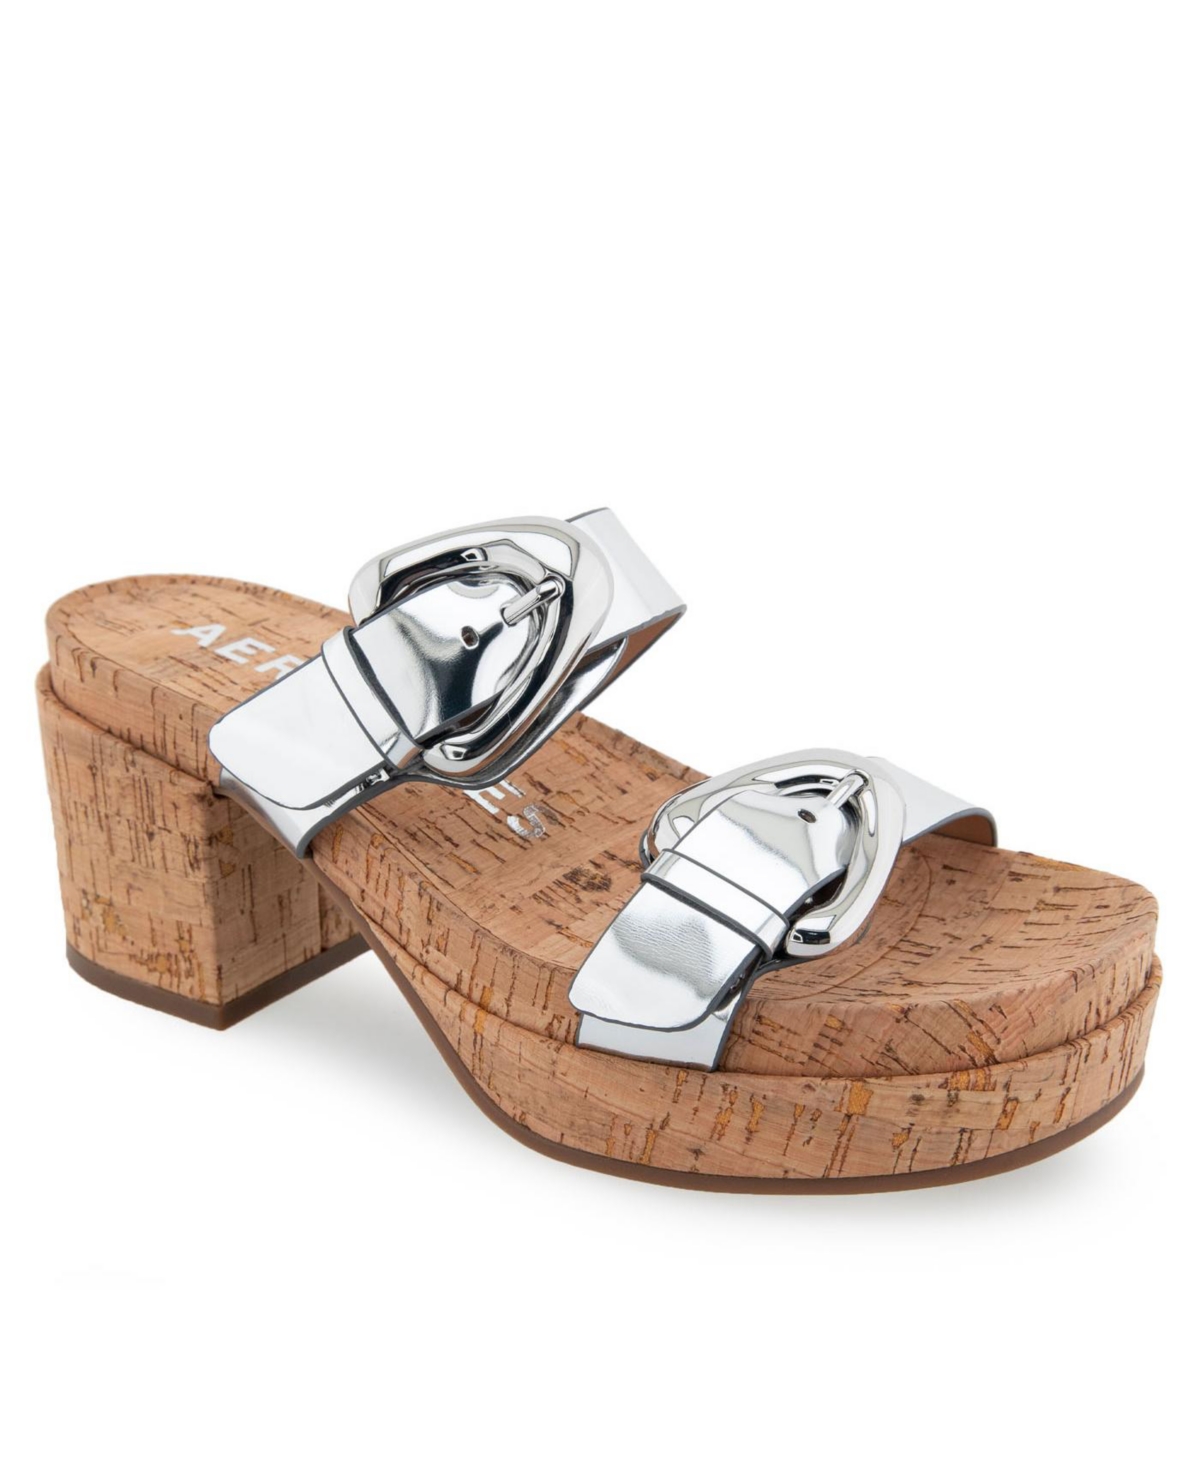 Women's Chance Platform Sandals - Silver Mirror Metallic Polyurethane